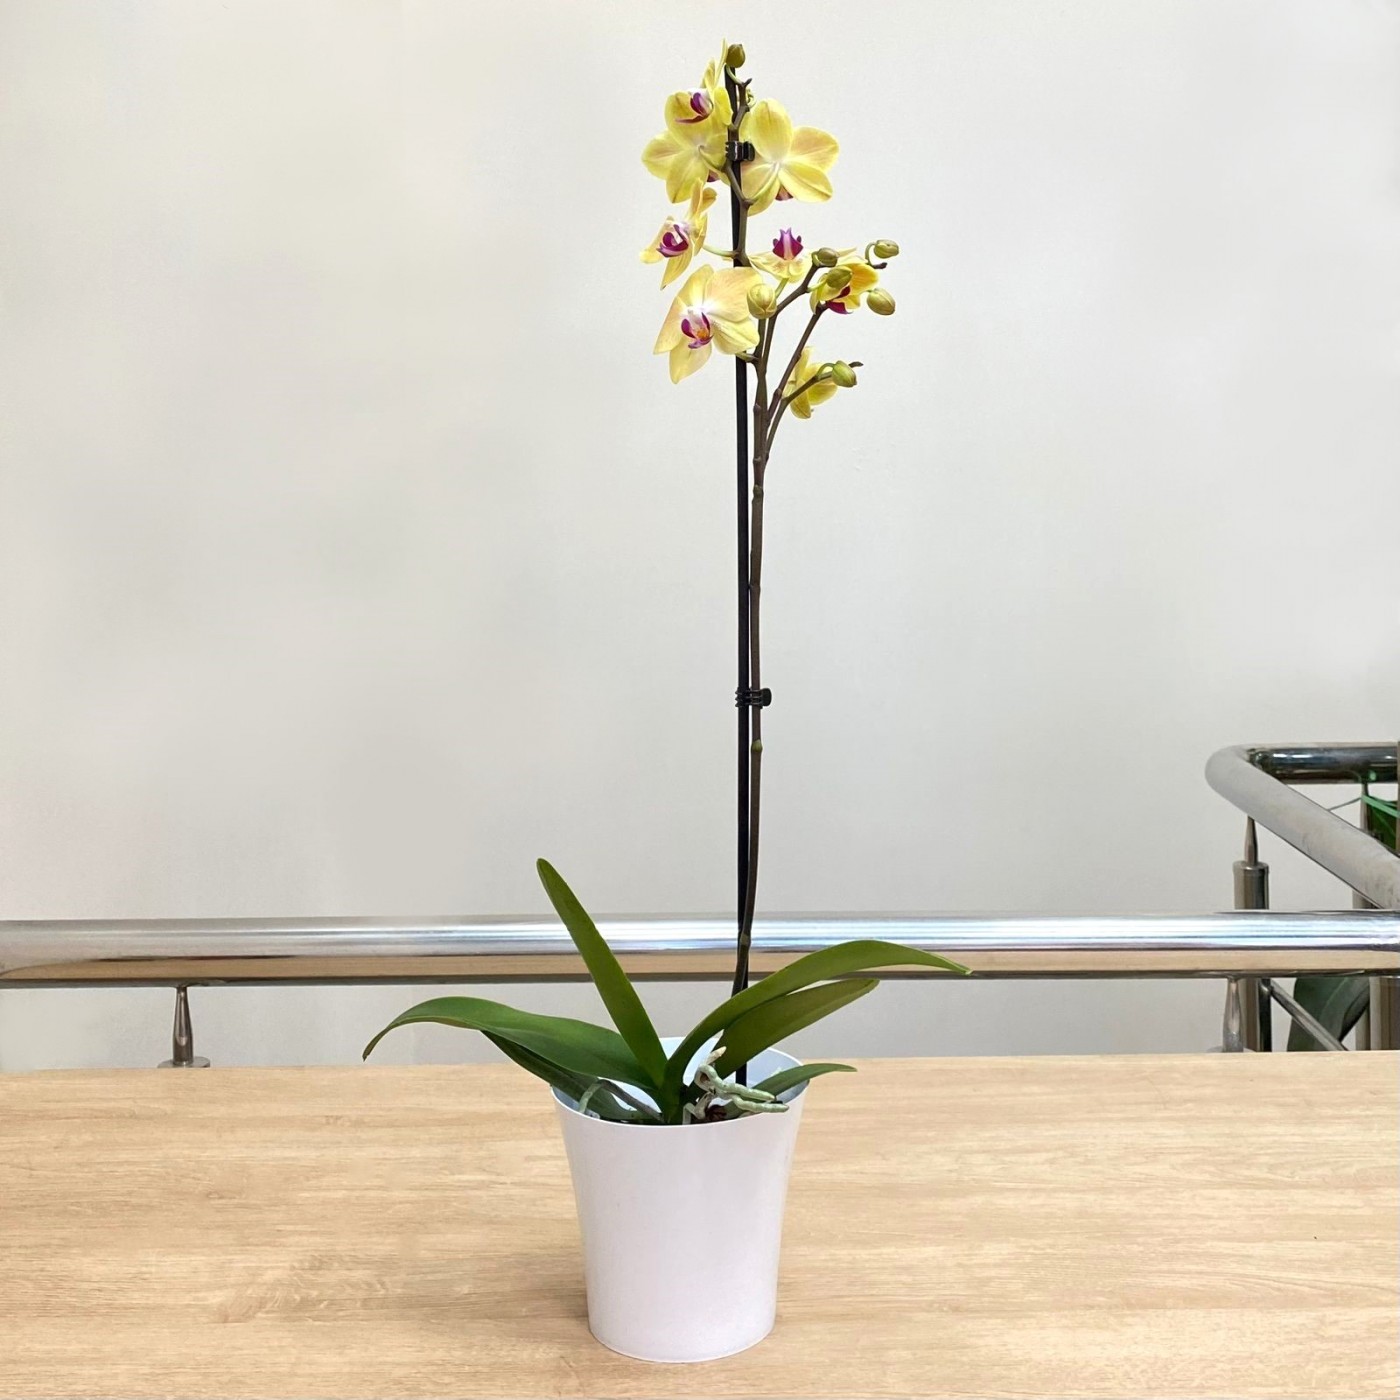 Орхидея Фаленопсис одноствольная жёлтая с фиолетовой серединкой